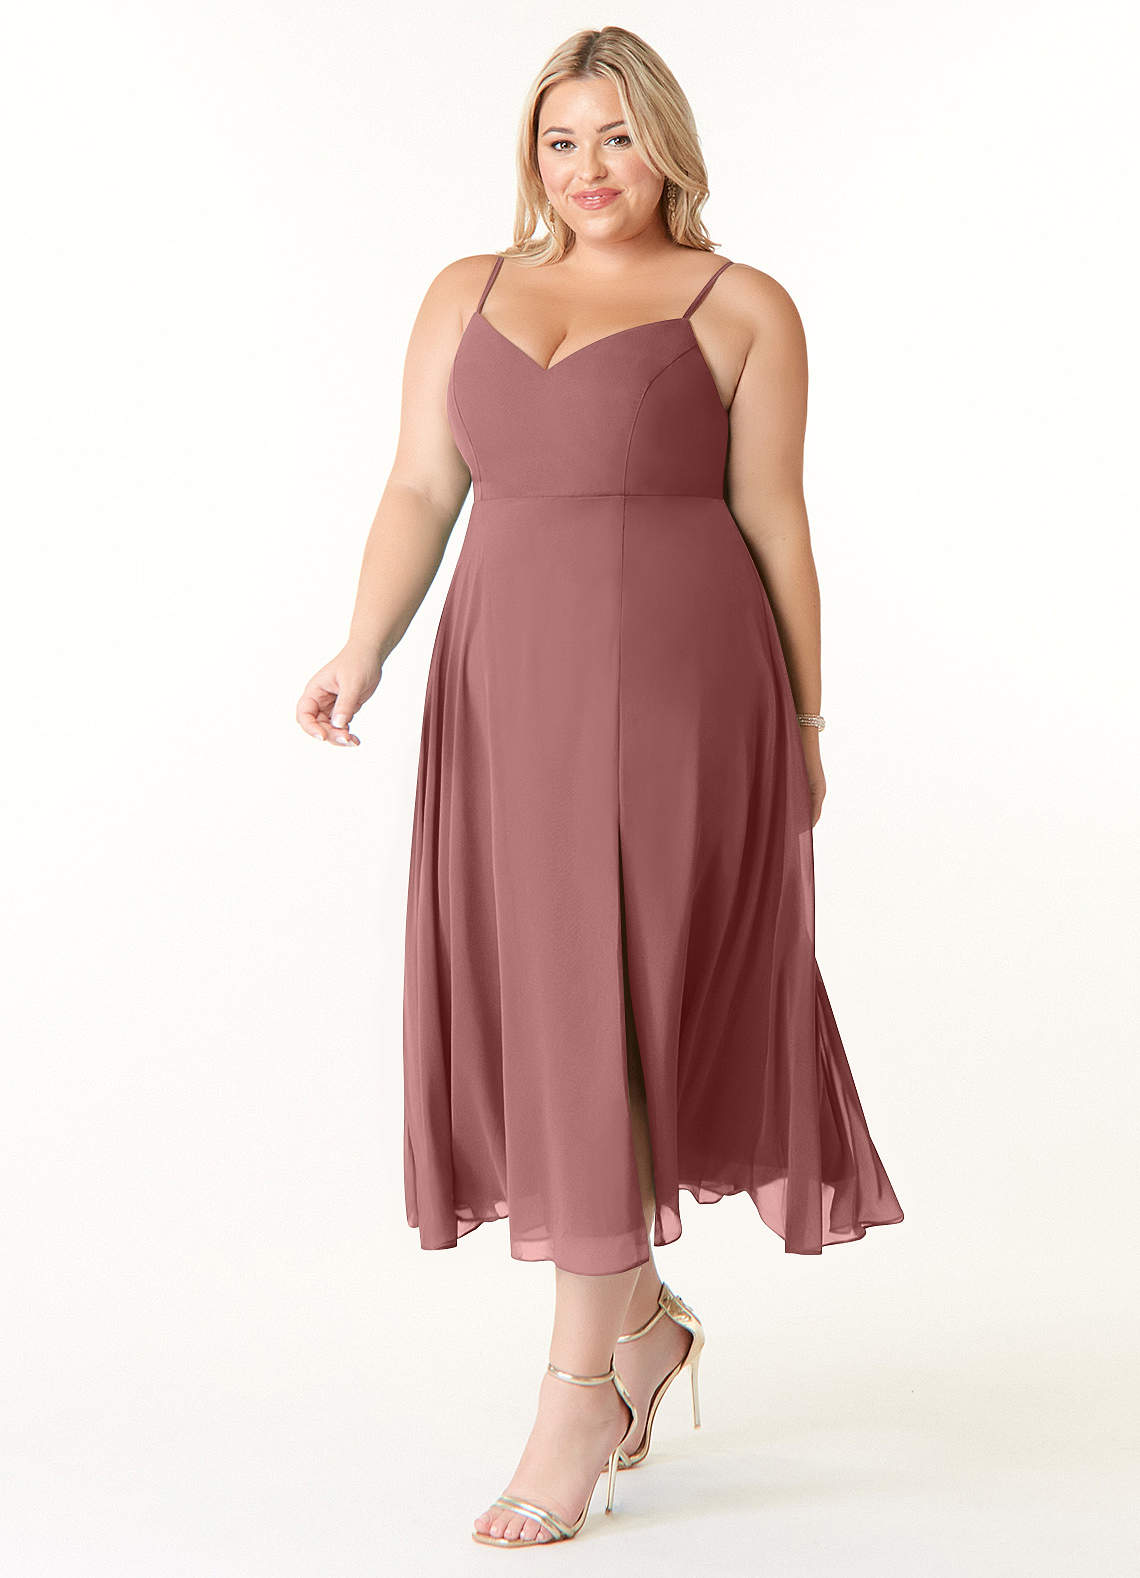 Azazie Clarissa Bridesmaid Dresses A-Line V-Neck Chiffon Tea-Length Dress image1